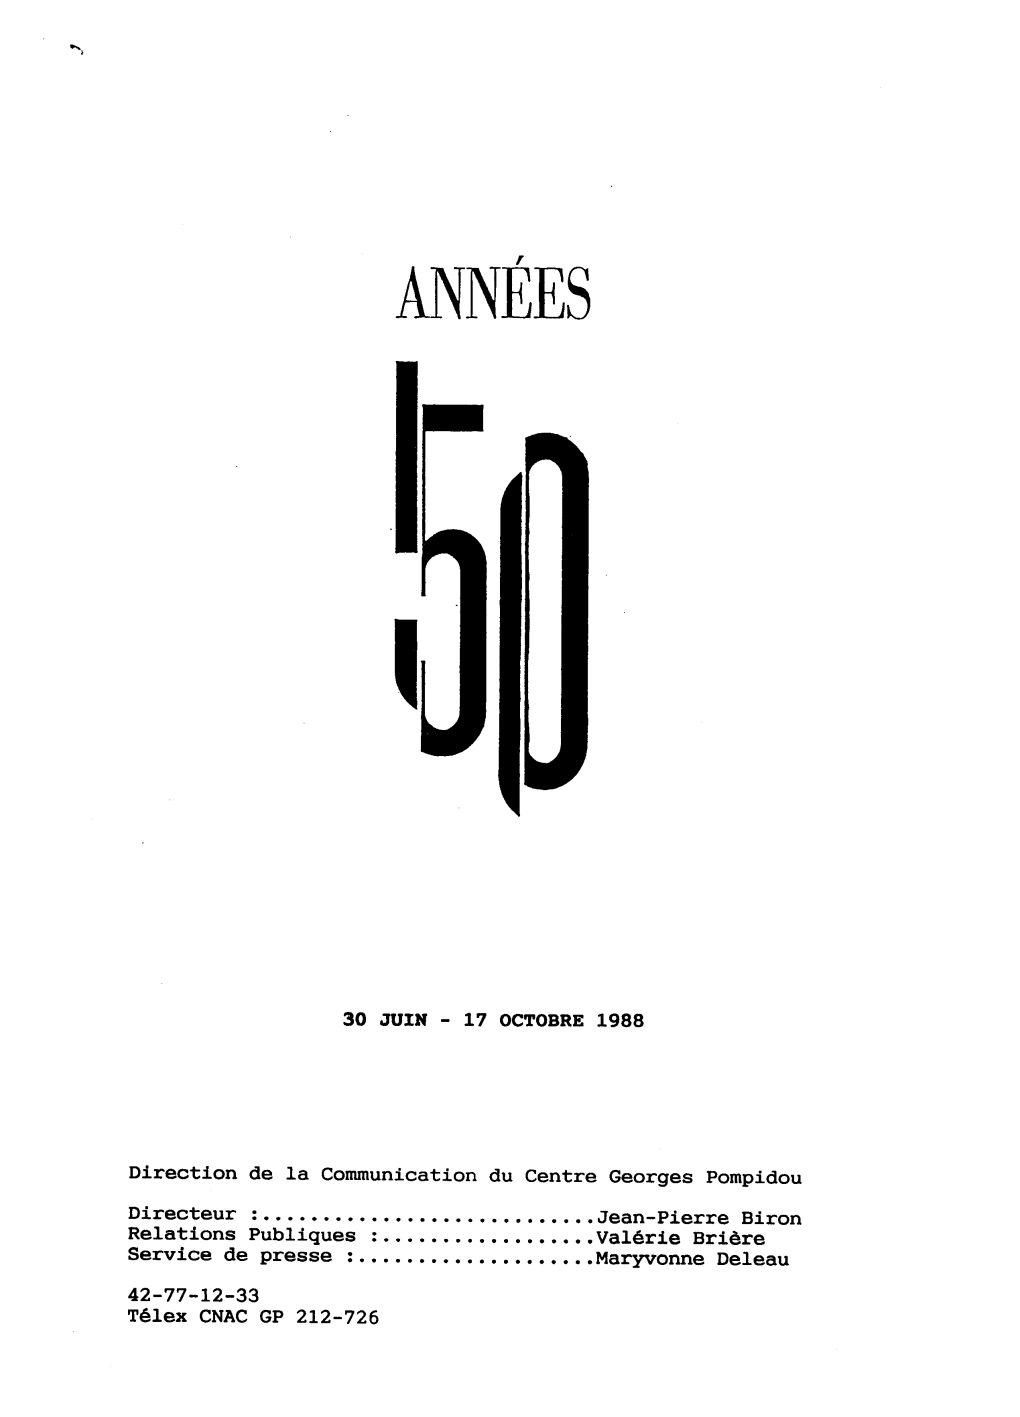 Dossier De Presse Les Années 50 1988